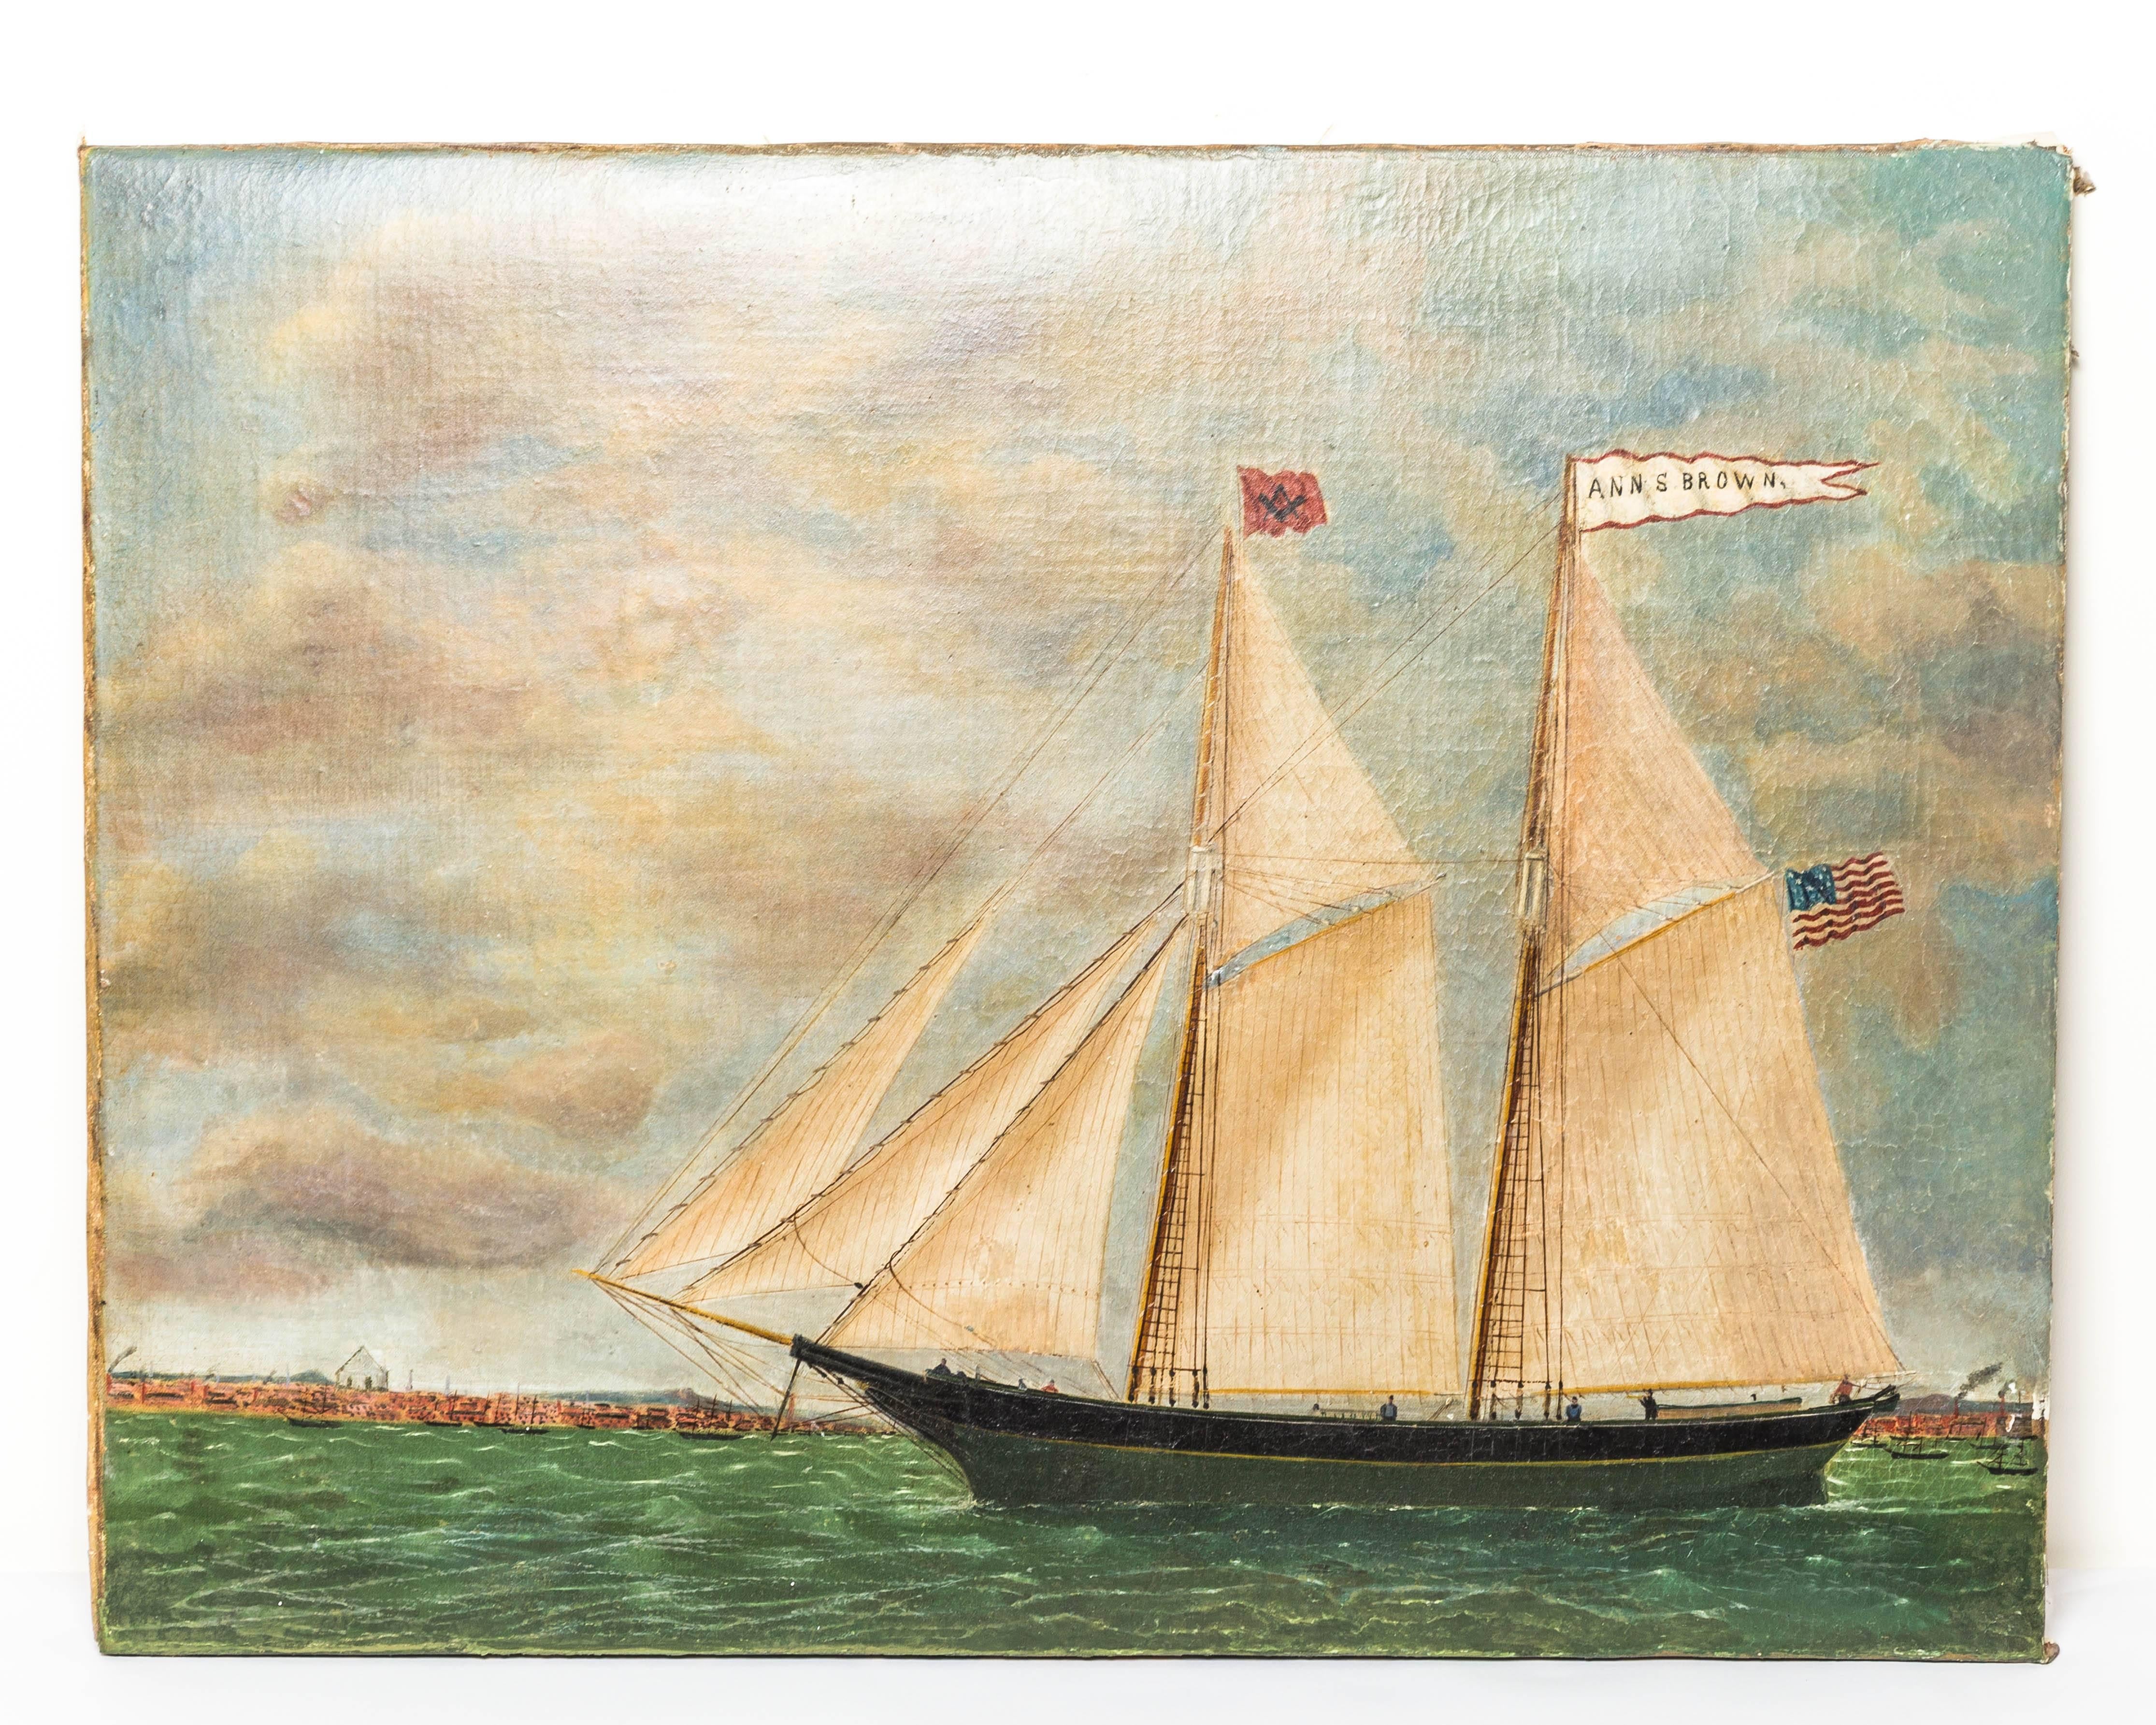 Canvas Schooner Ann S. Brown by William Hare